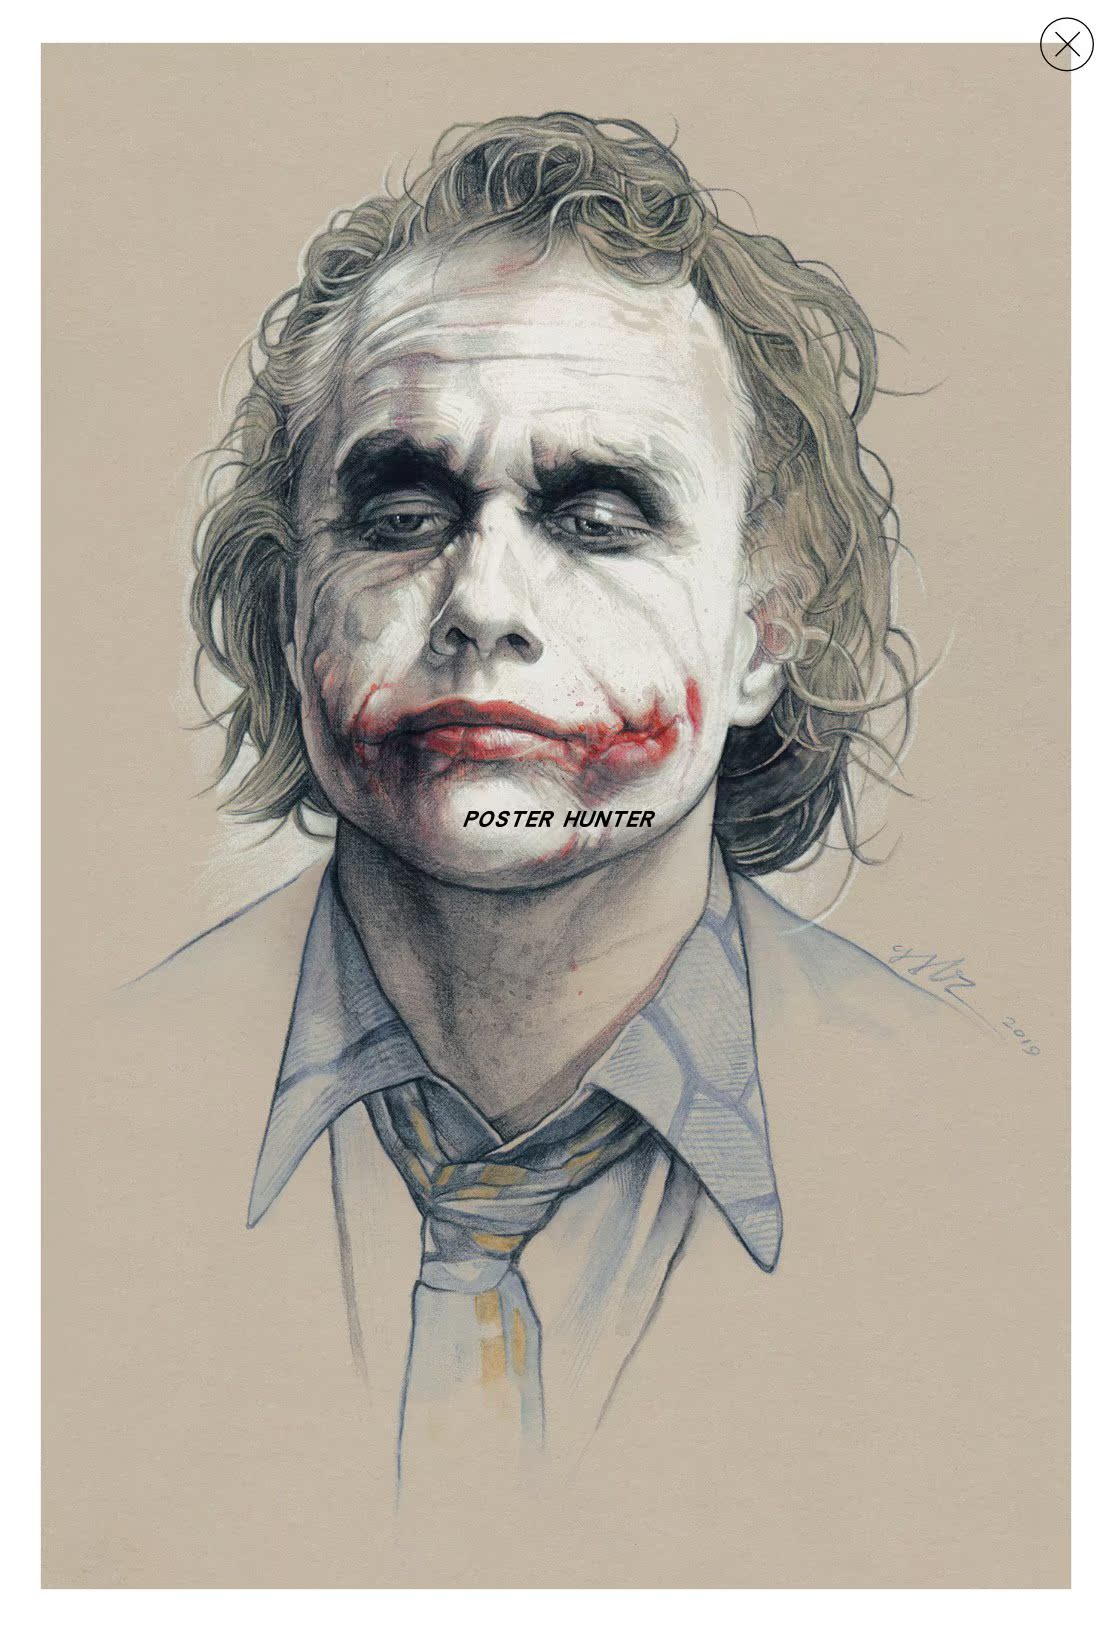 gabz "the joker"小丑画像 希斯莱杰 海外画廊购入 限量150